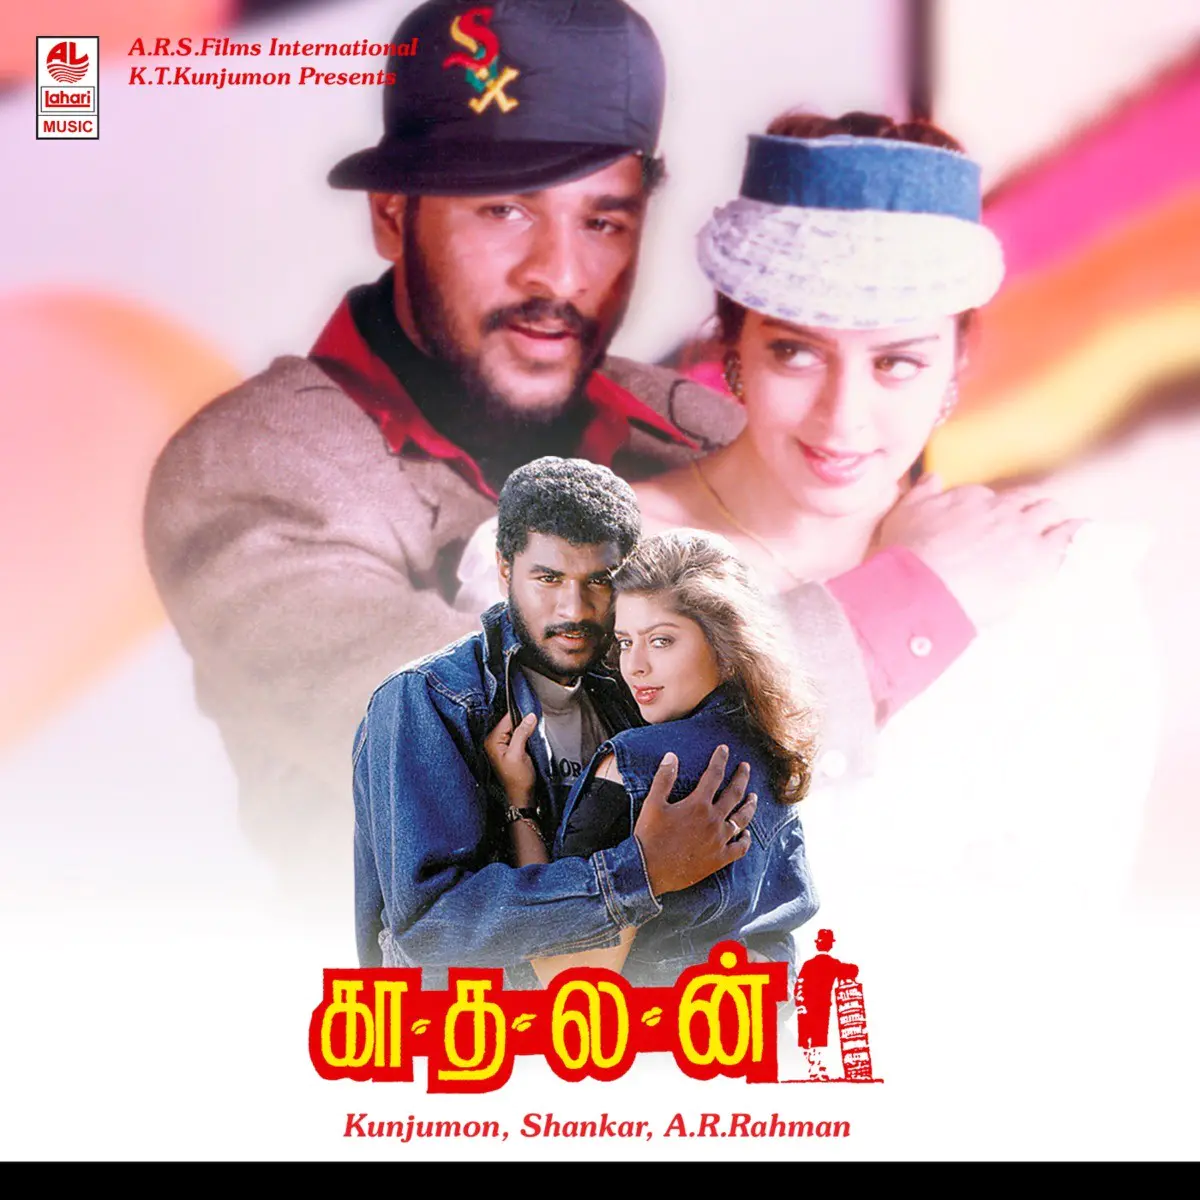 Kaadhalan Songs Download Tamil Movie Kaadhalan Mp3 Songs Online Free On Gaana Com Kadhlar dhinam free mp3 download. tamil movie kaadhalan mp3 songs online